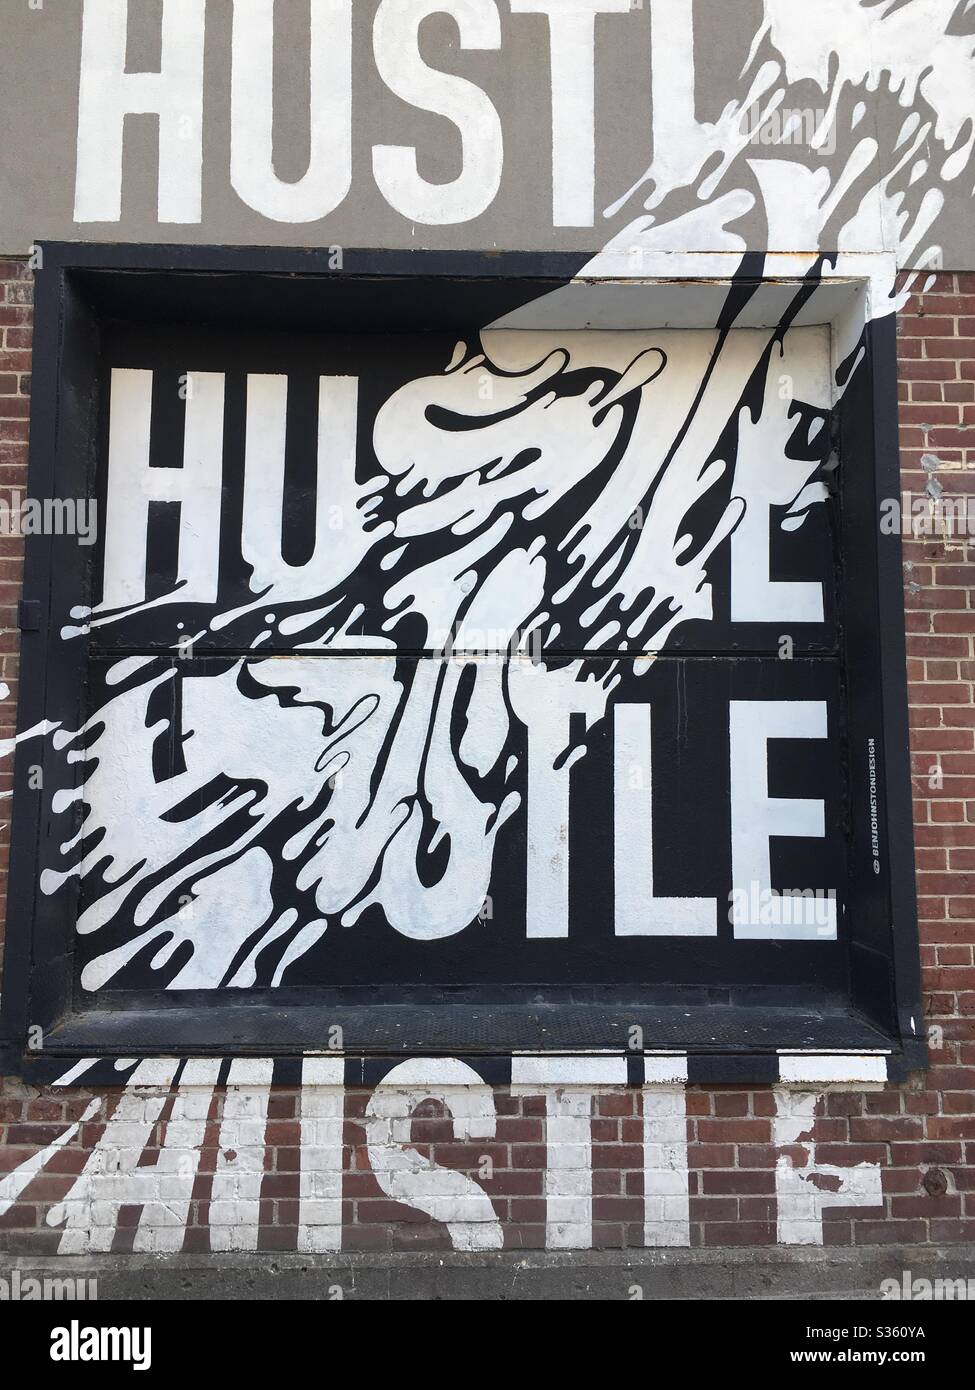 Hustle Foto de stock